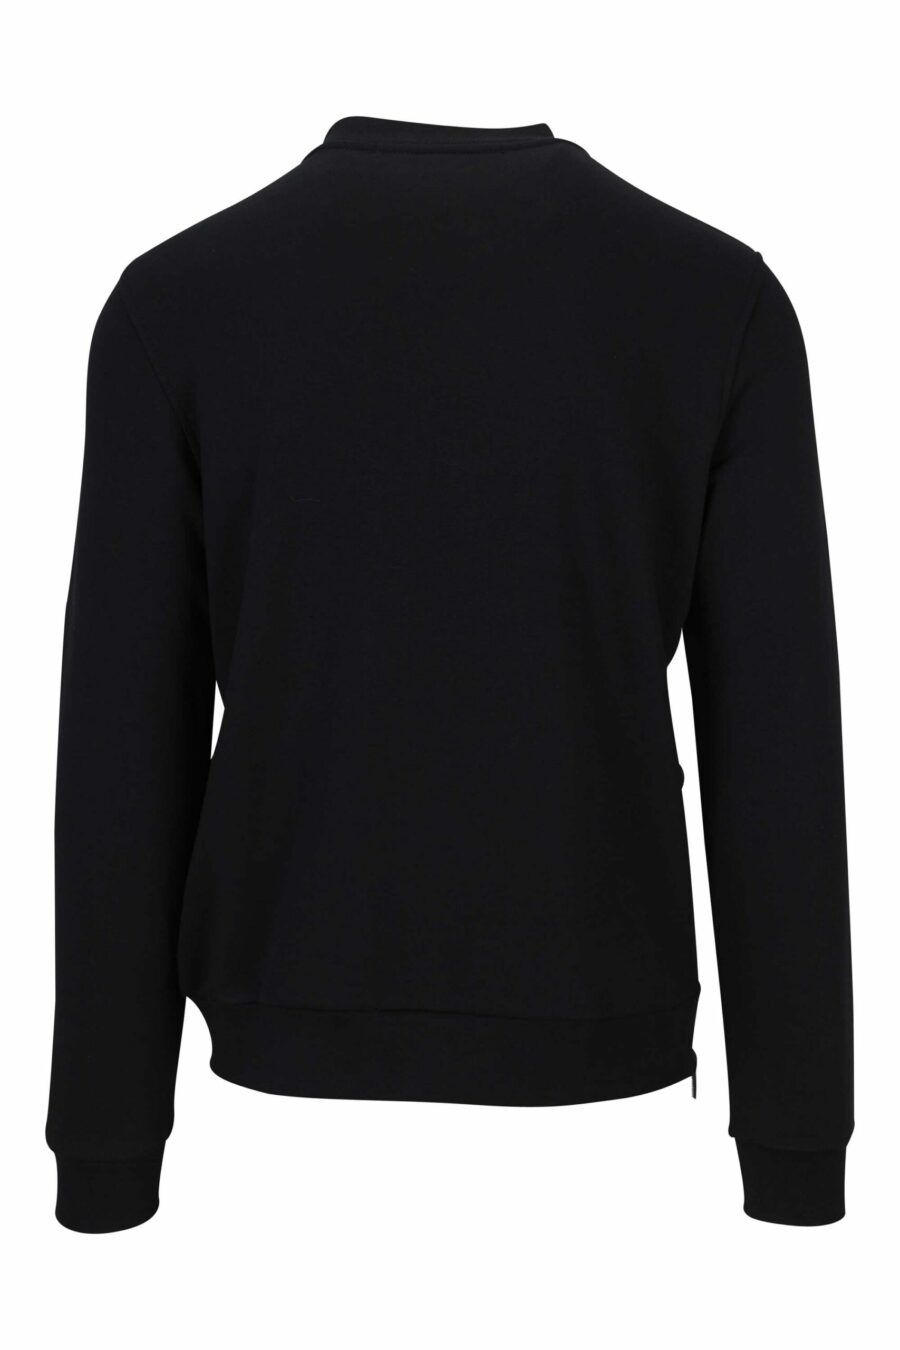 Schwarzes Sweatshirt mit gesticktem Minilogue - 4062226652995 1 1 skaliert